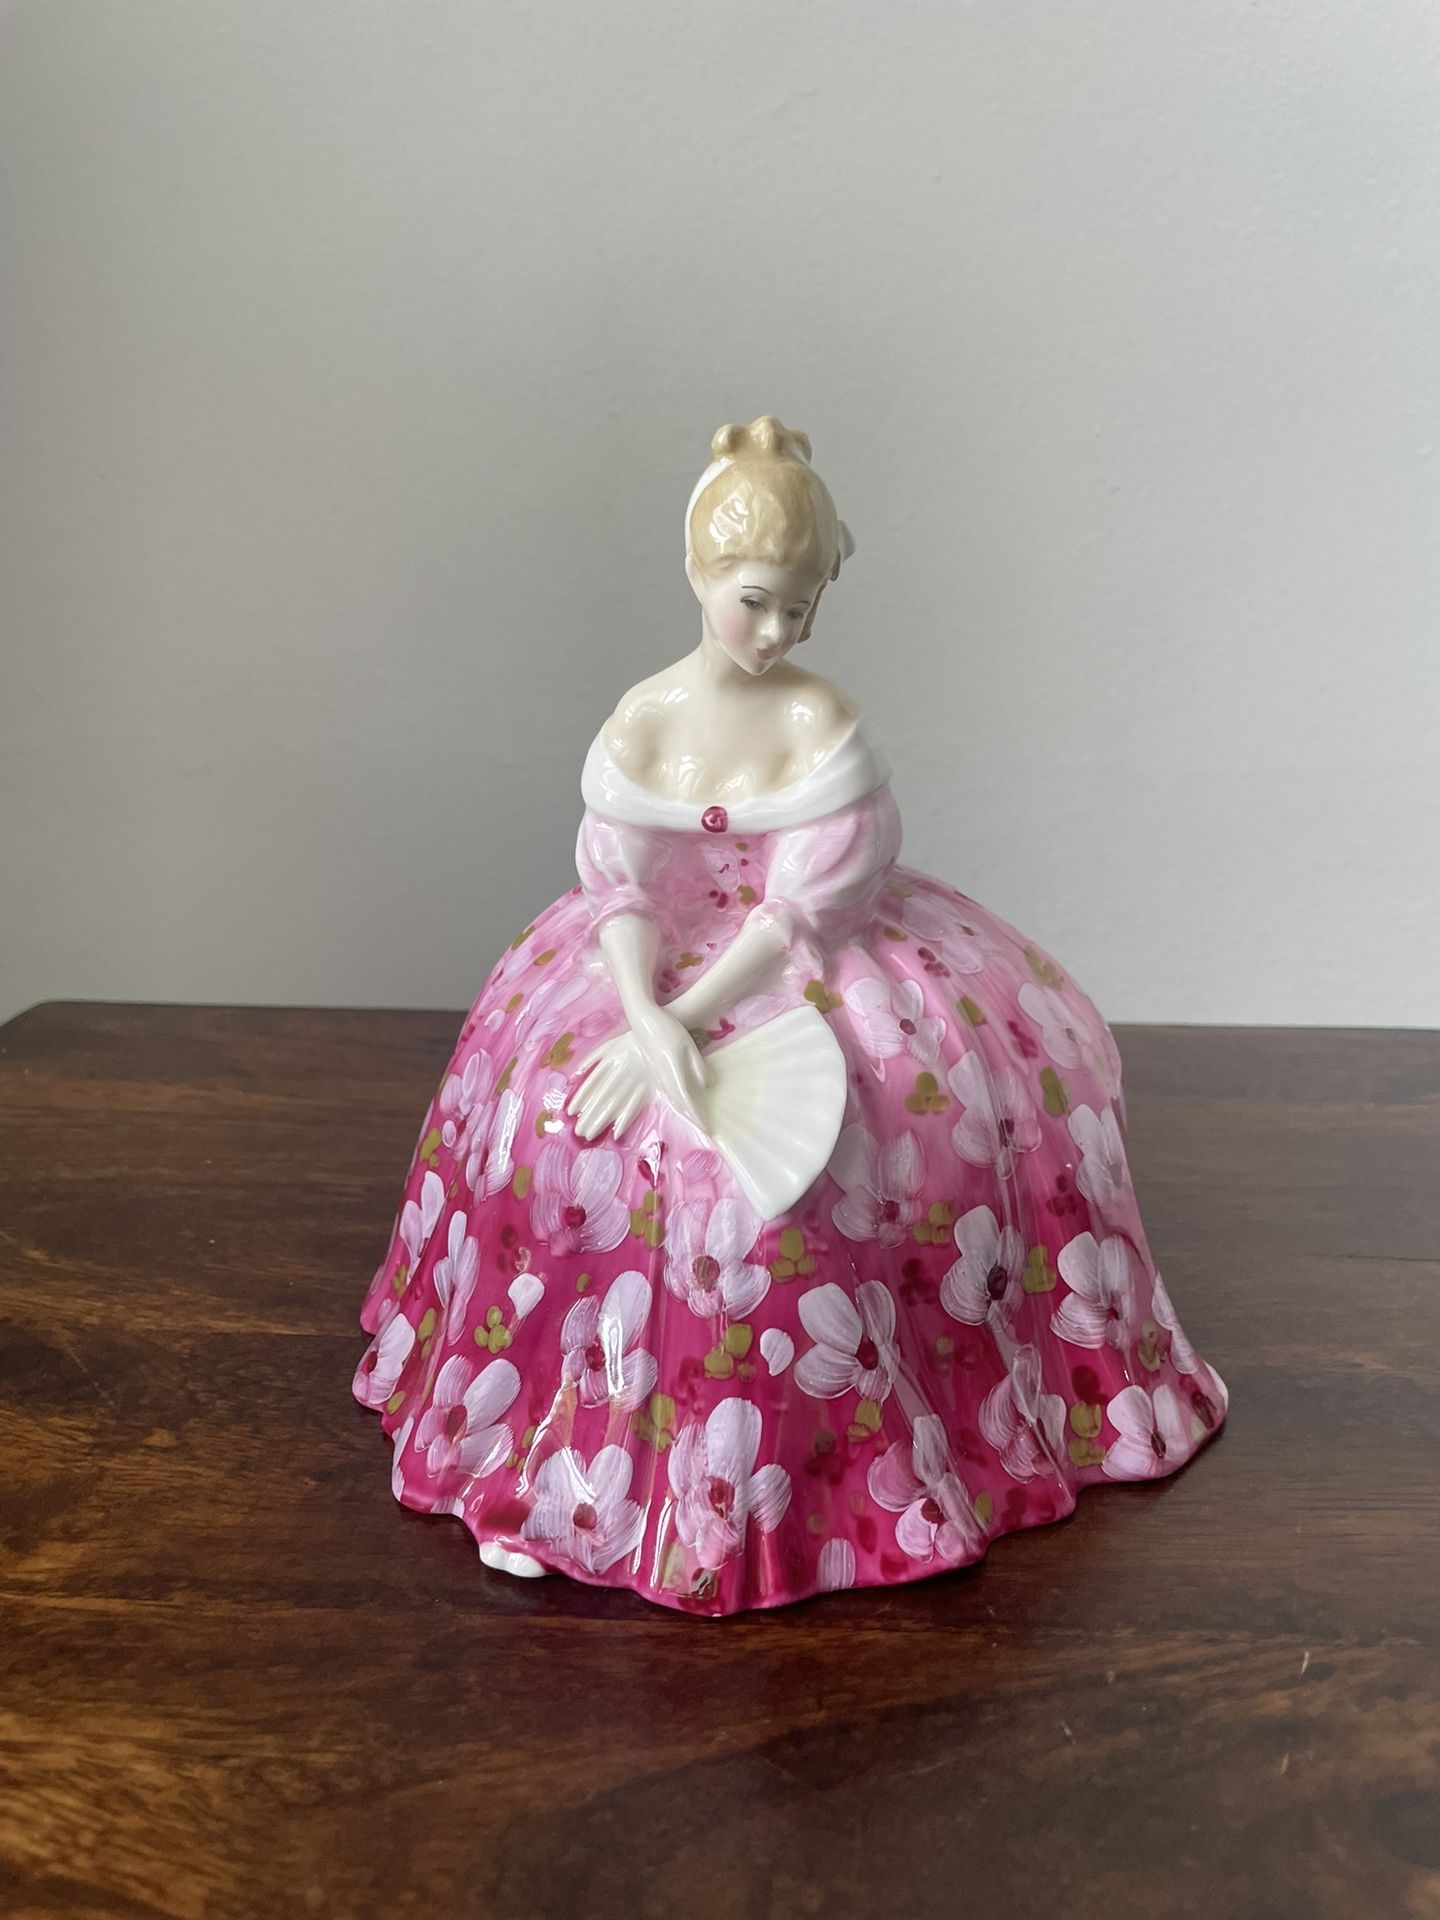 Royal Doulton Porcelain Figurine “Victoria” 1972